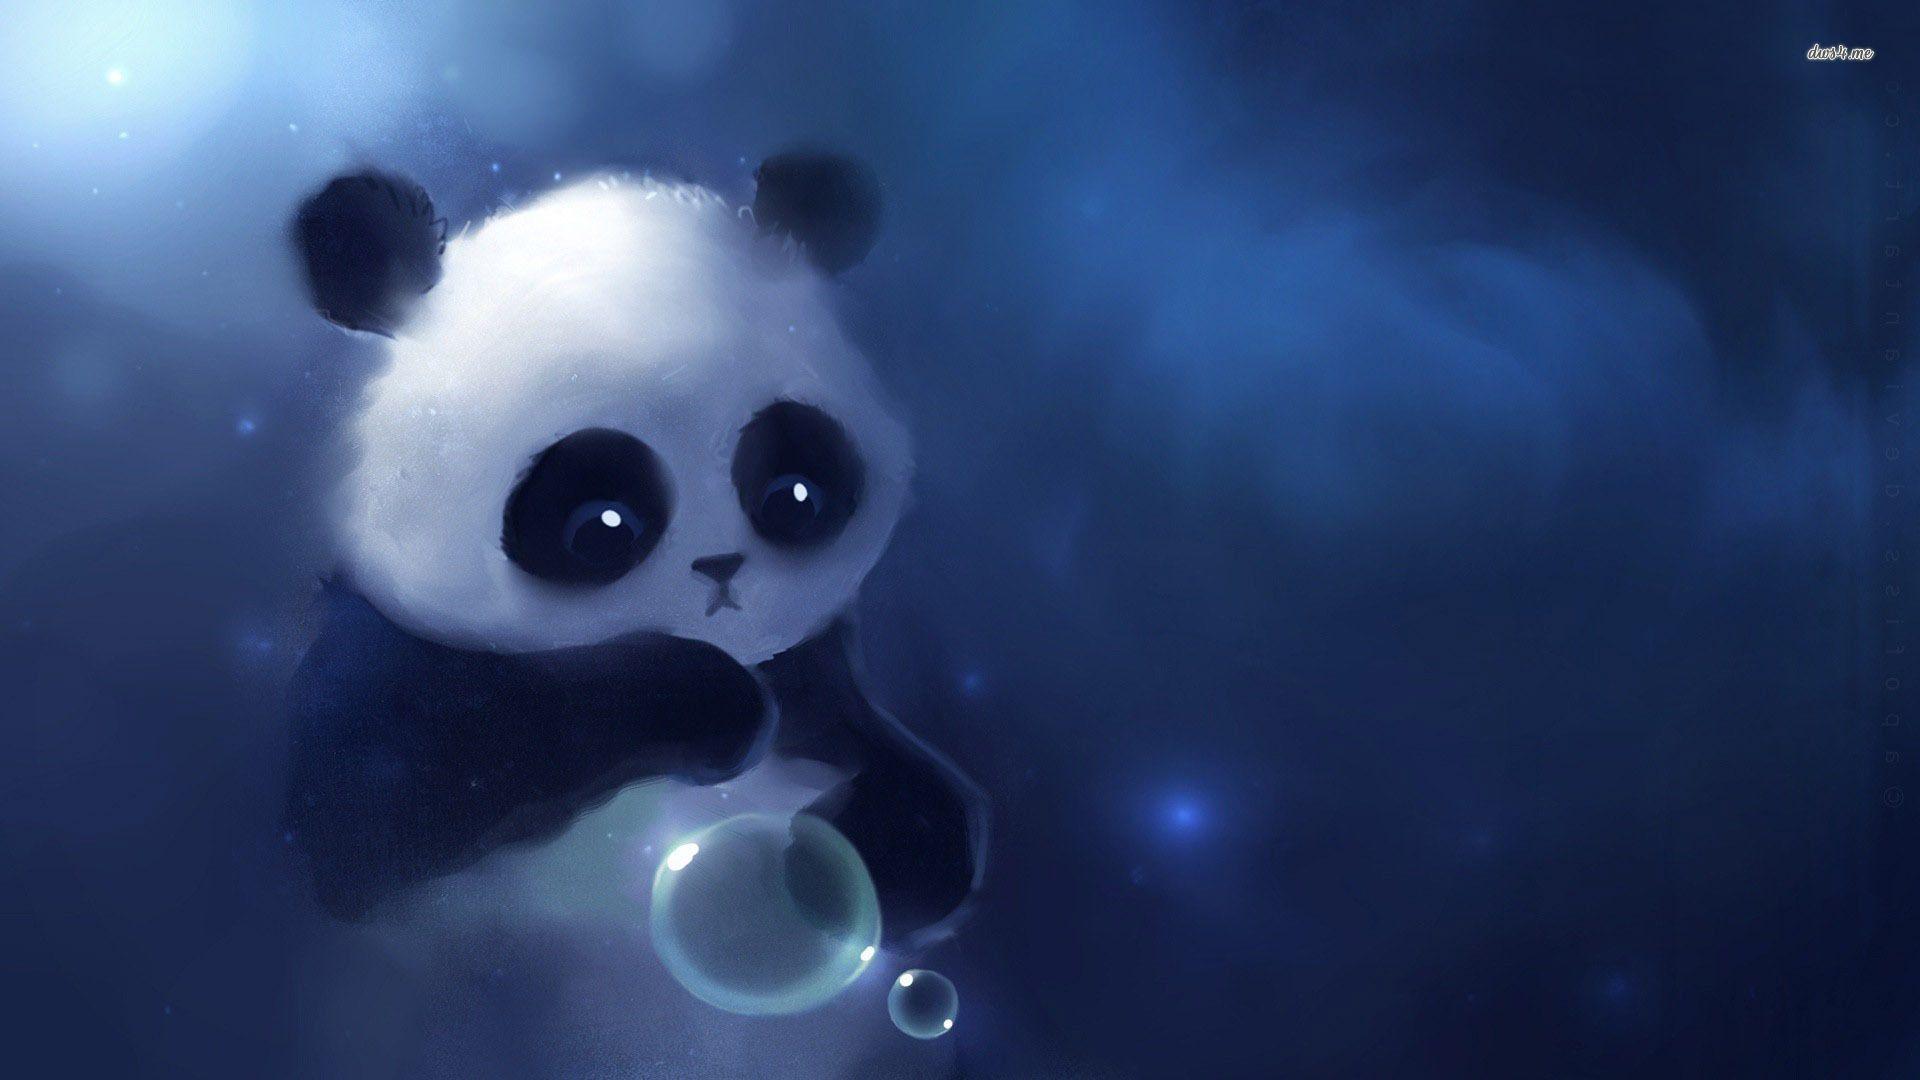 Wallpaper For > Cute Panda Wallpaper For iPad